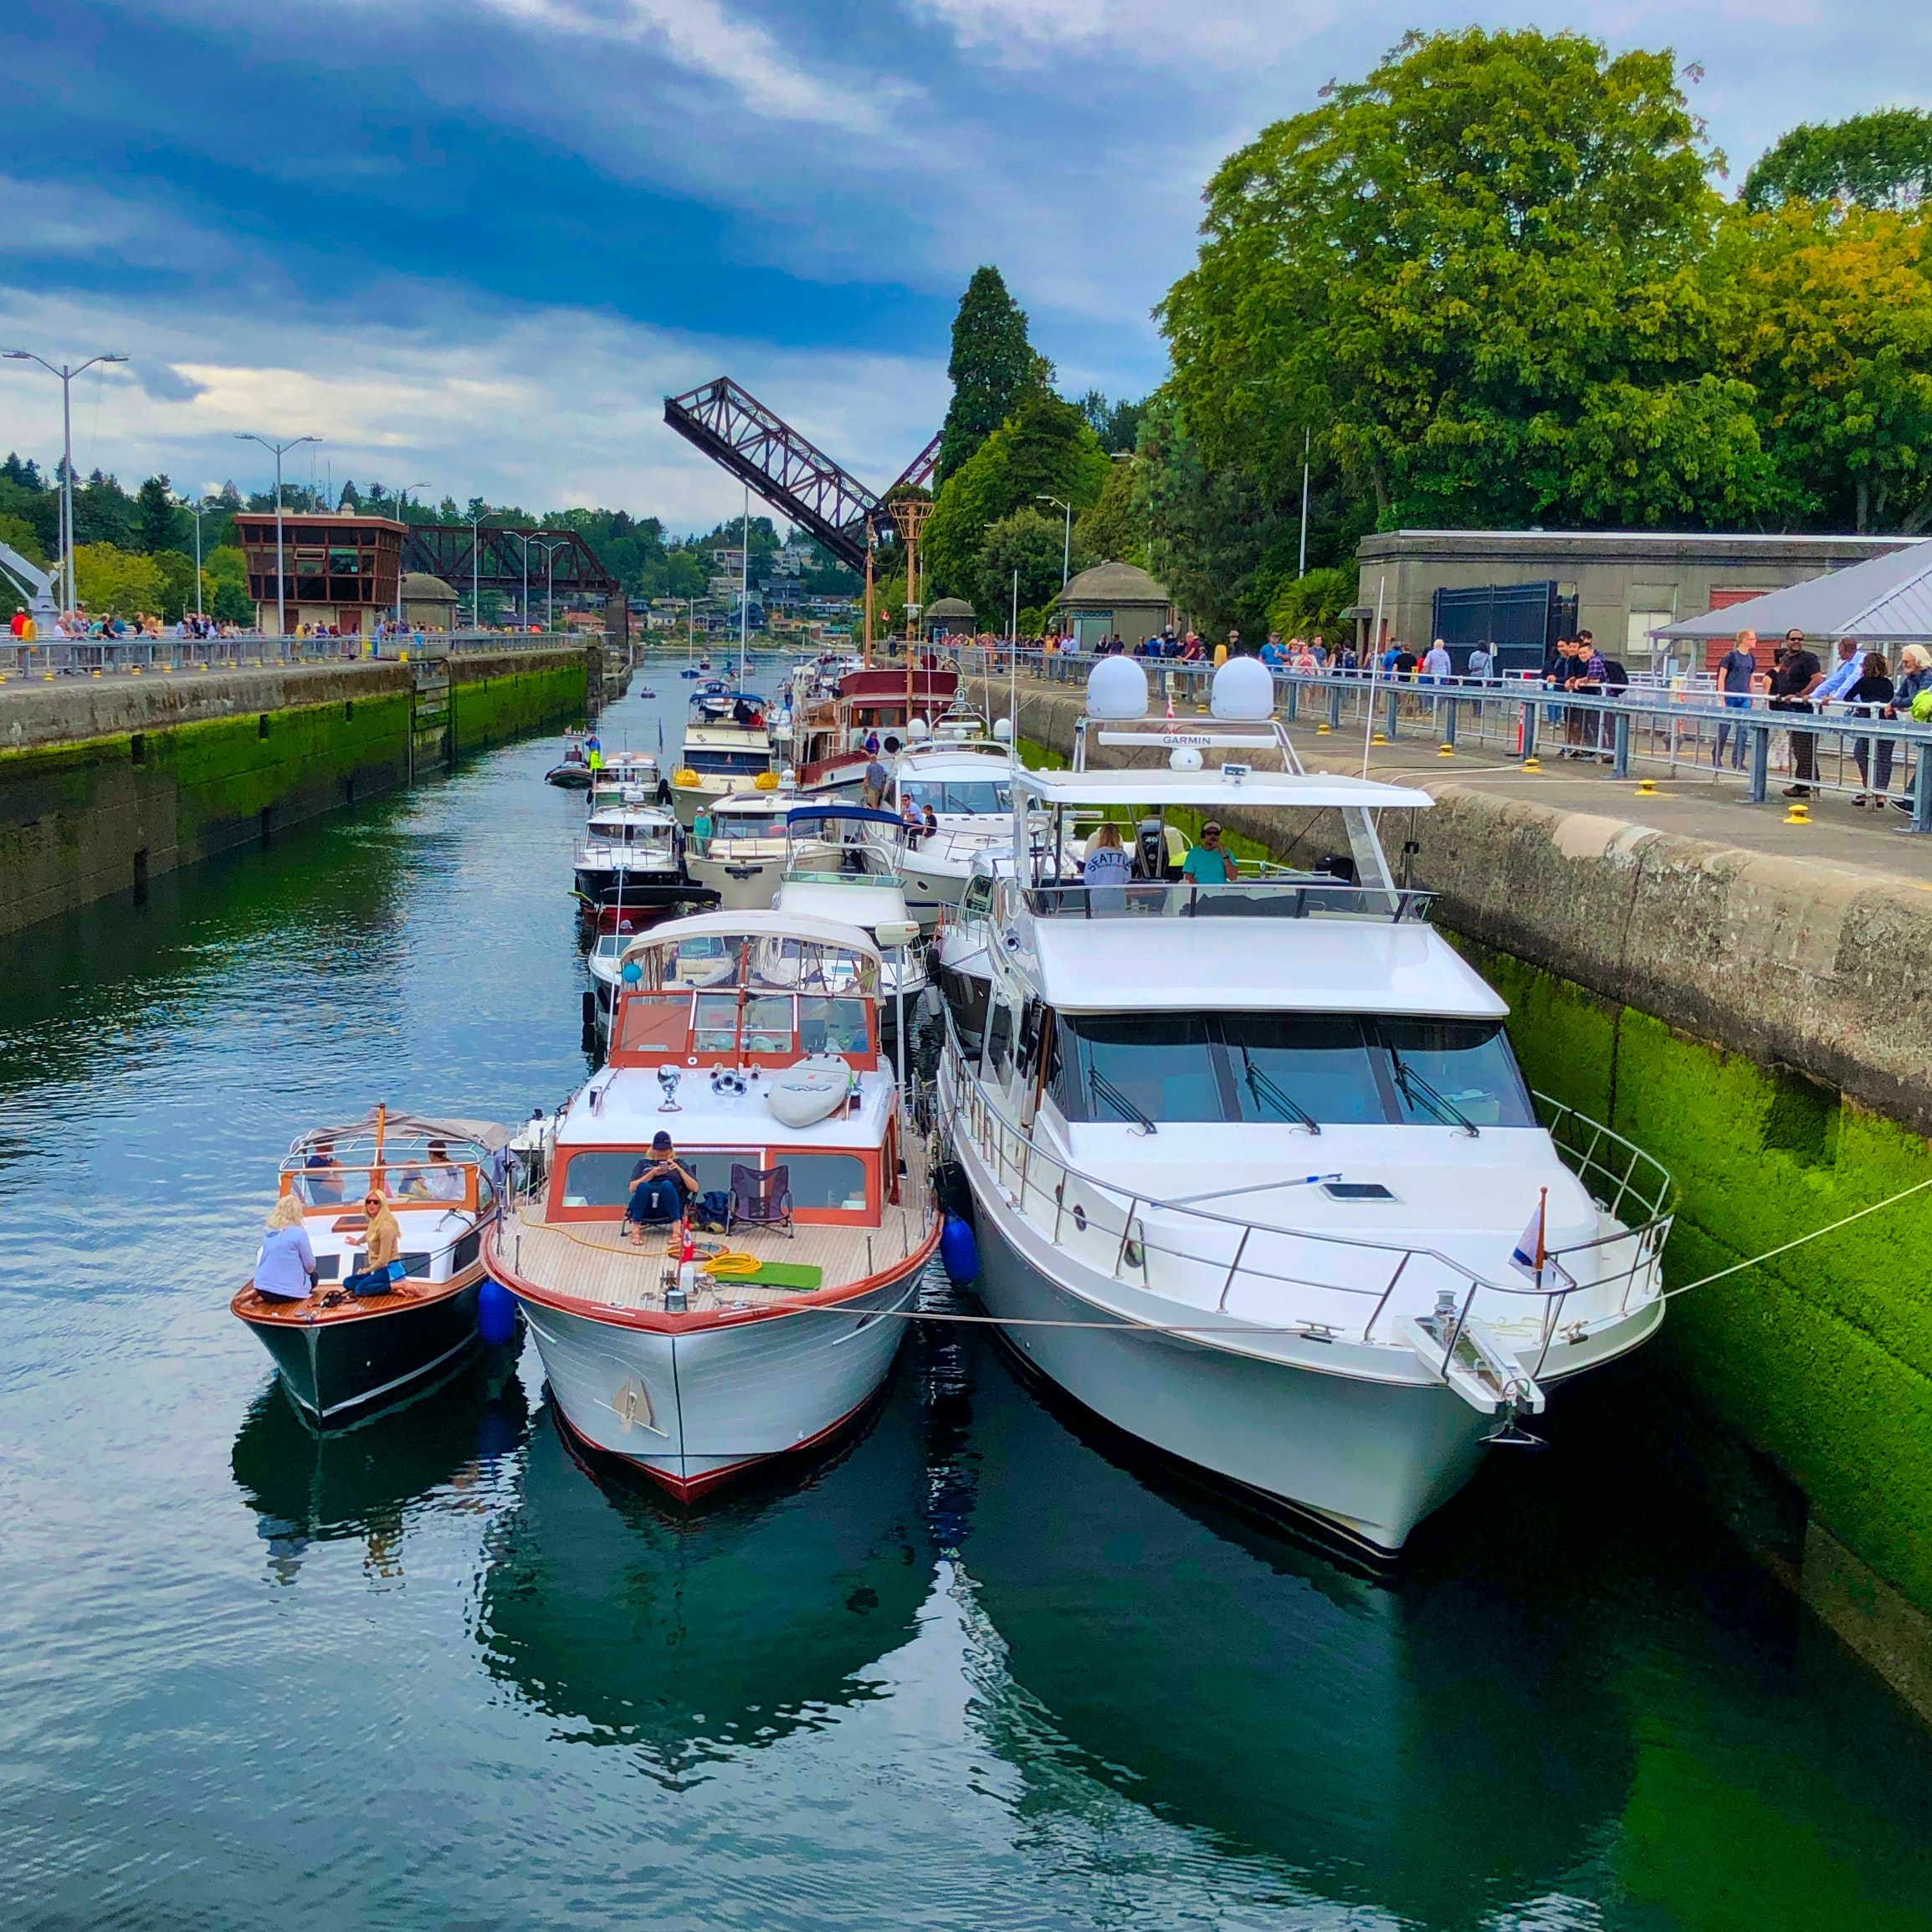 Boats docked in Seattle, Washington